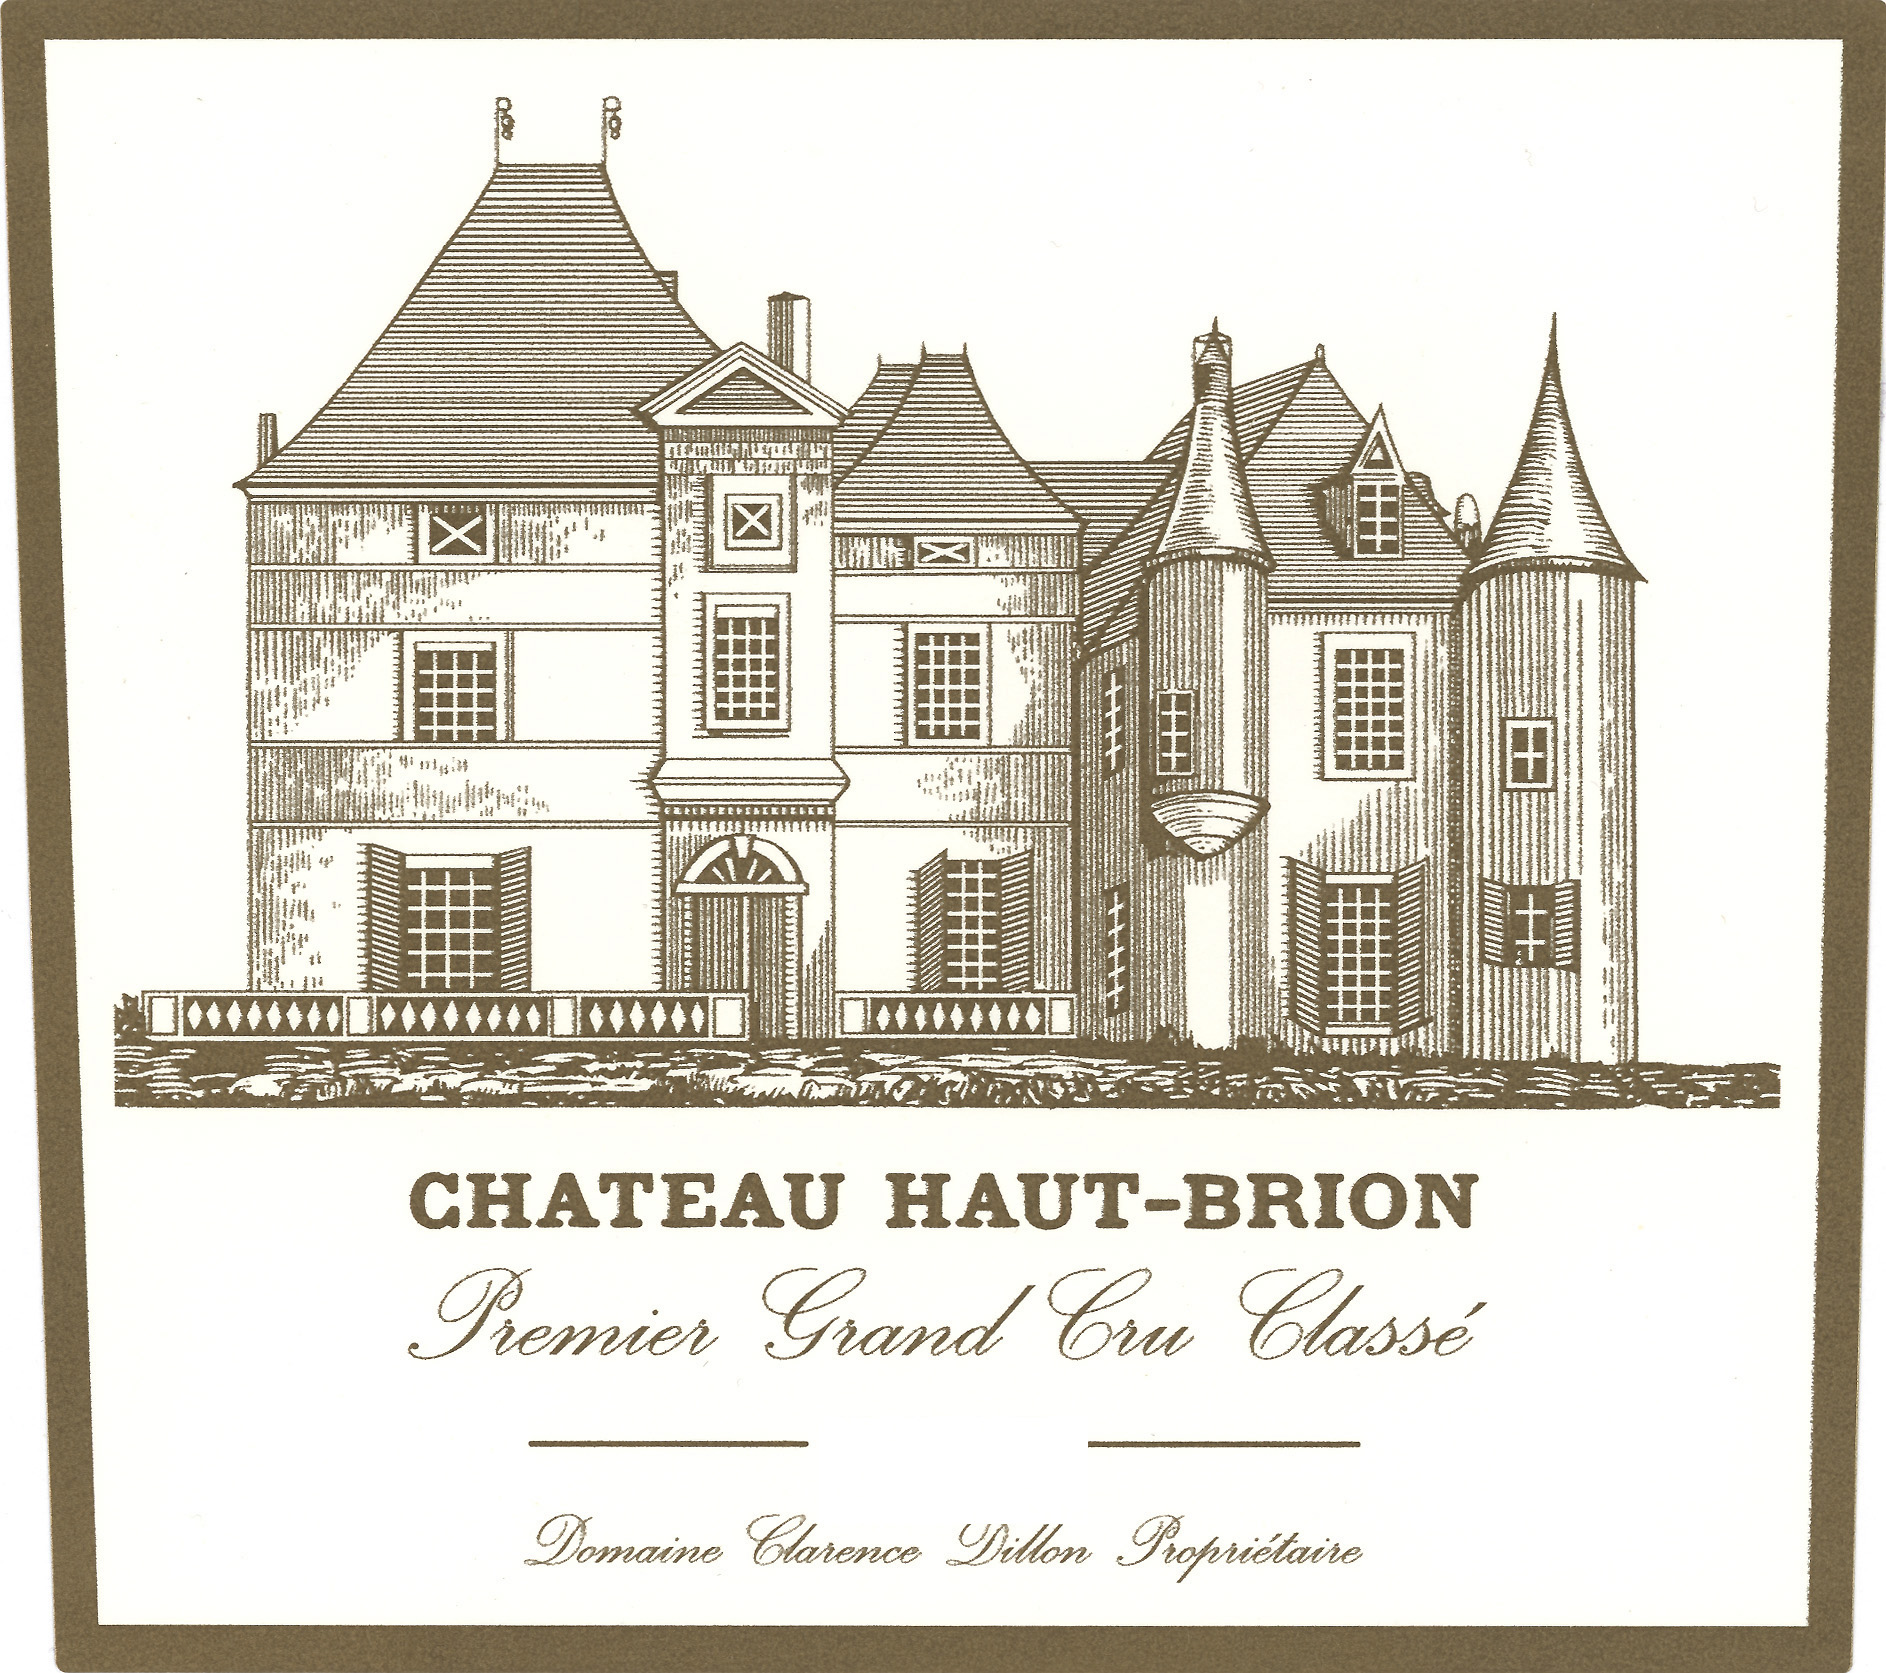 Chateau Haut-Brion label